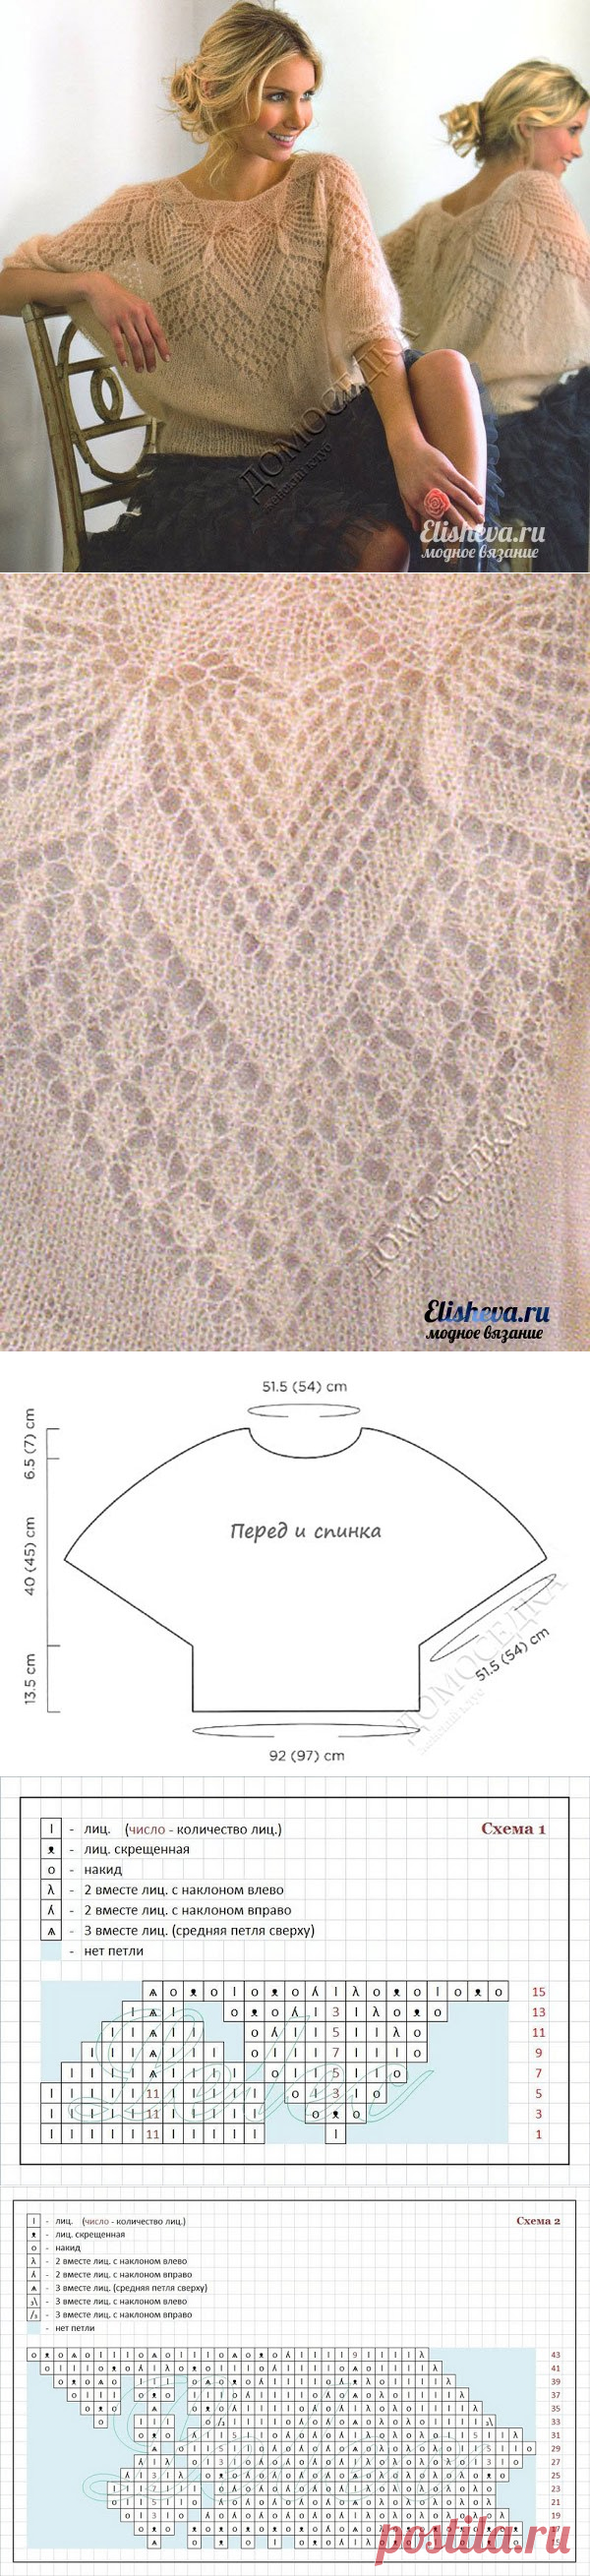 Ажурная блуза из мохера вязаная спицами | Блог elisheva.ru